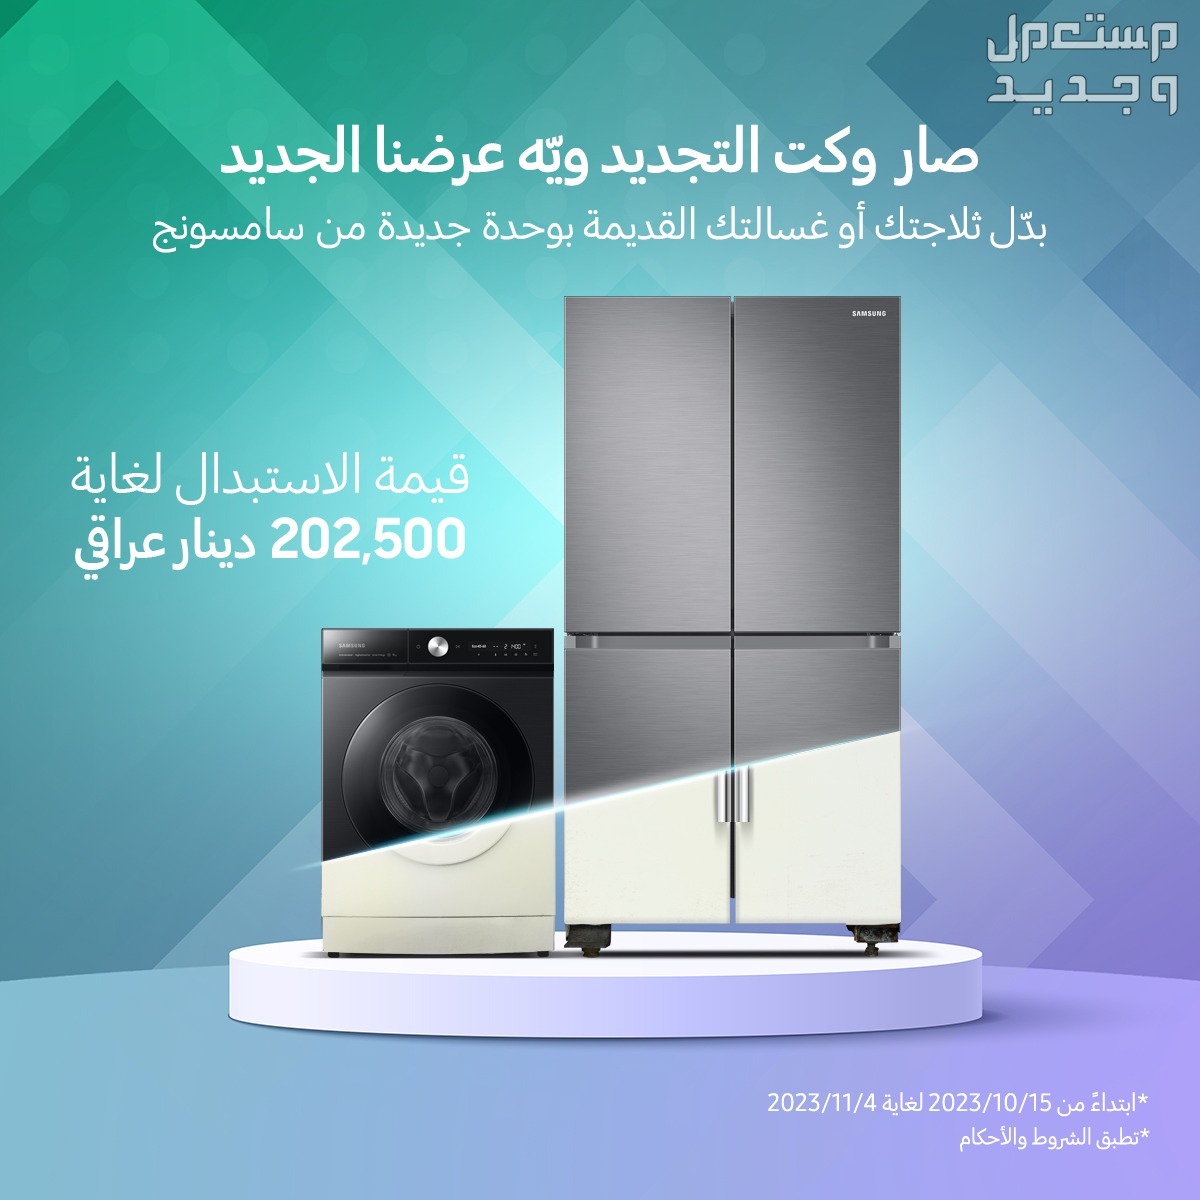 سامسونج إلكترونيكس المشرق العربي تطلق حملة استبدال الأجهزة الكهربائية القديمة بأخرى جديدة من "سامسونج"